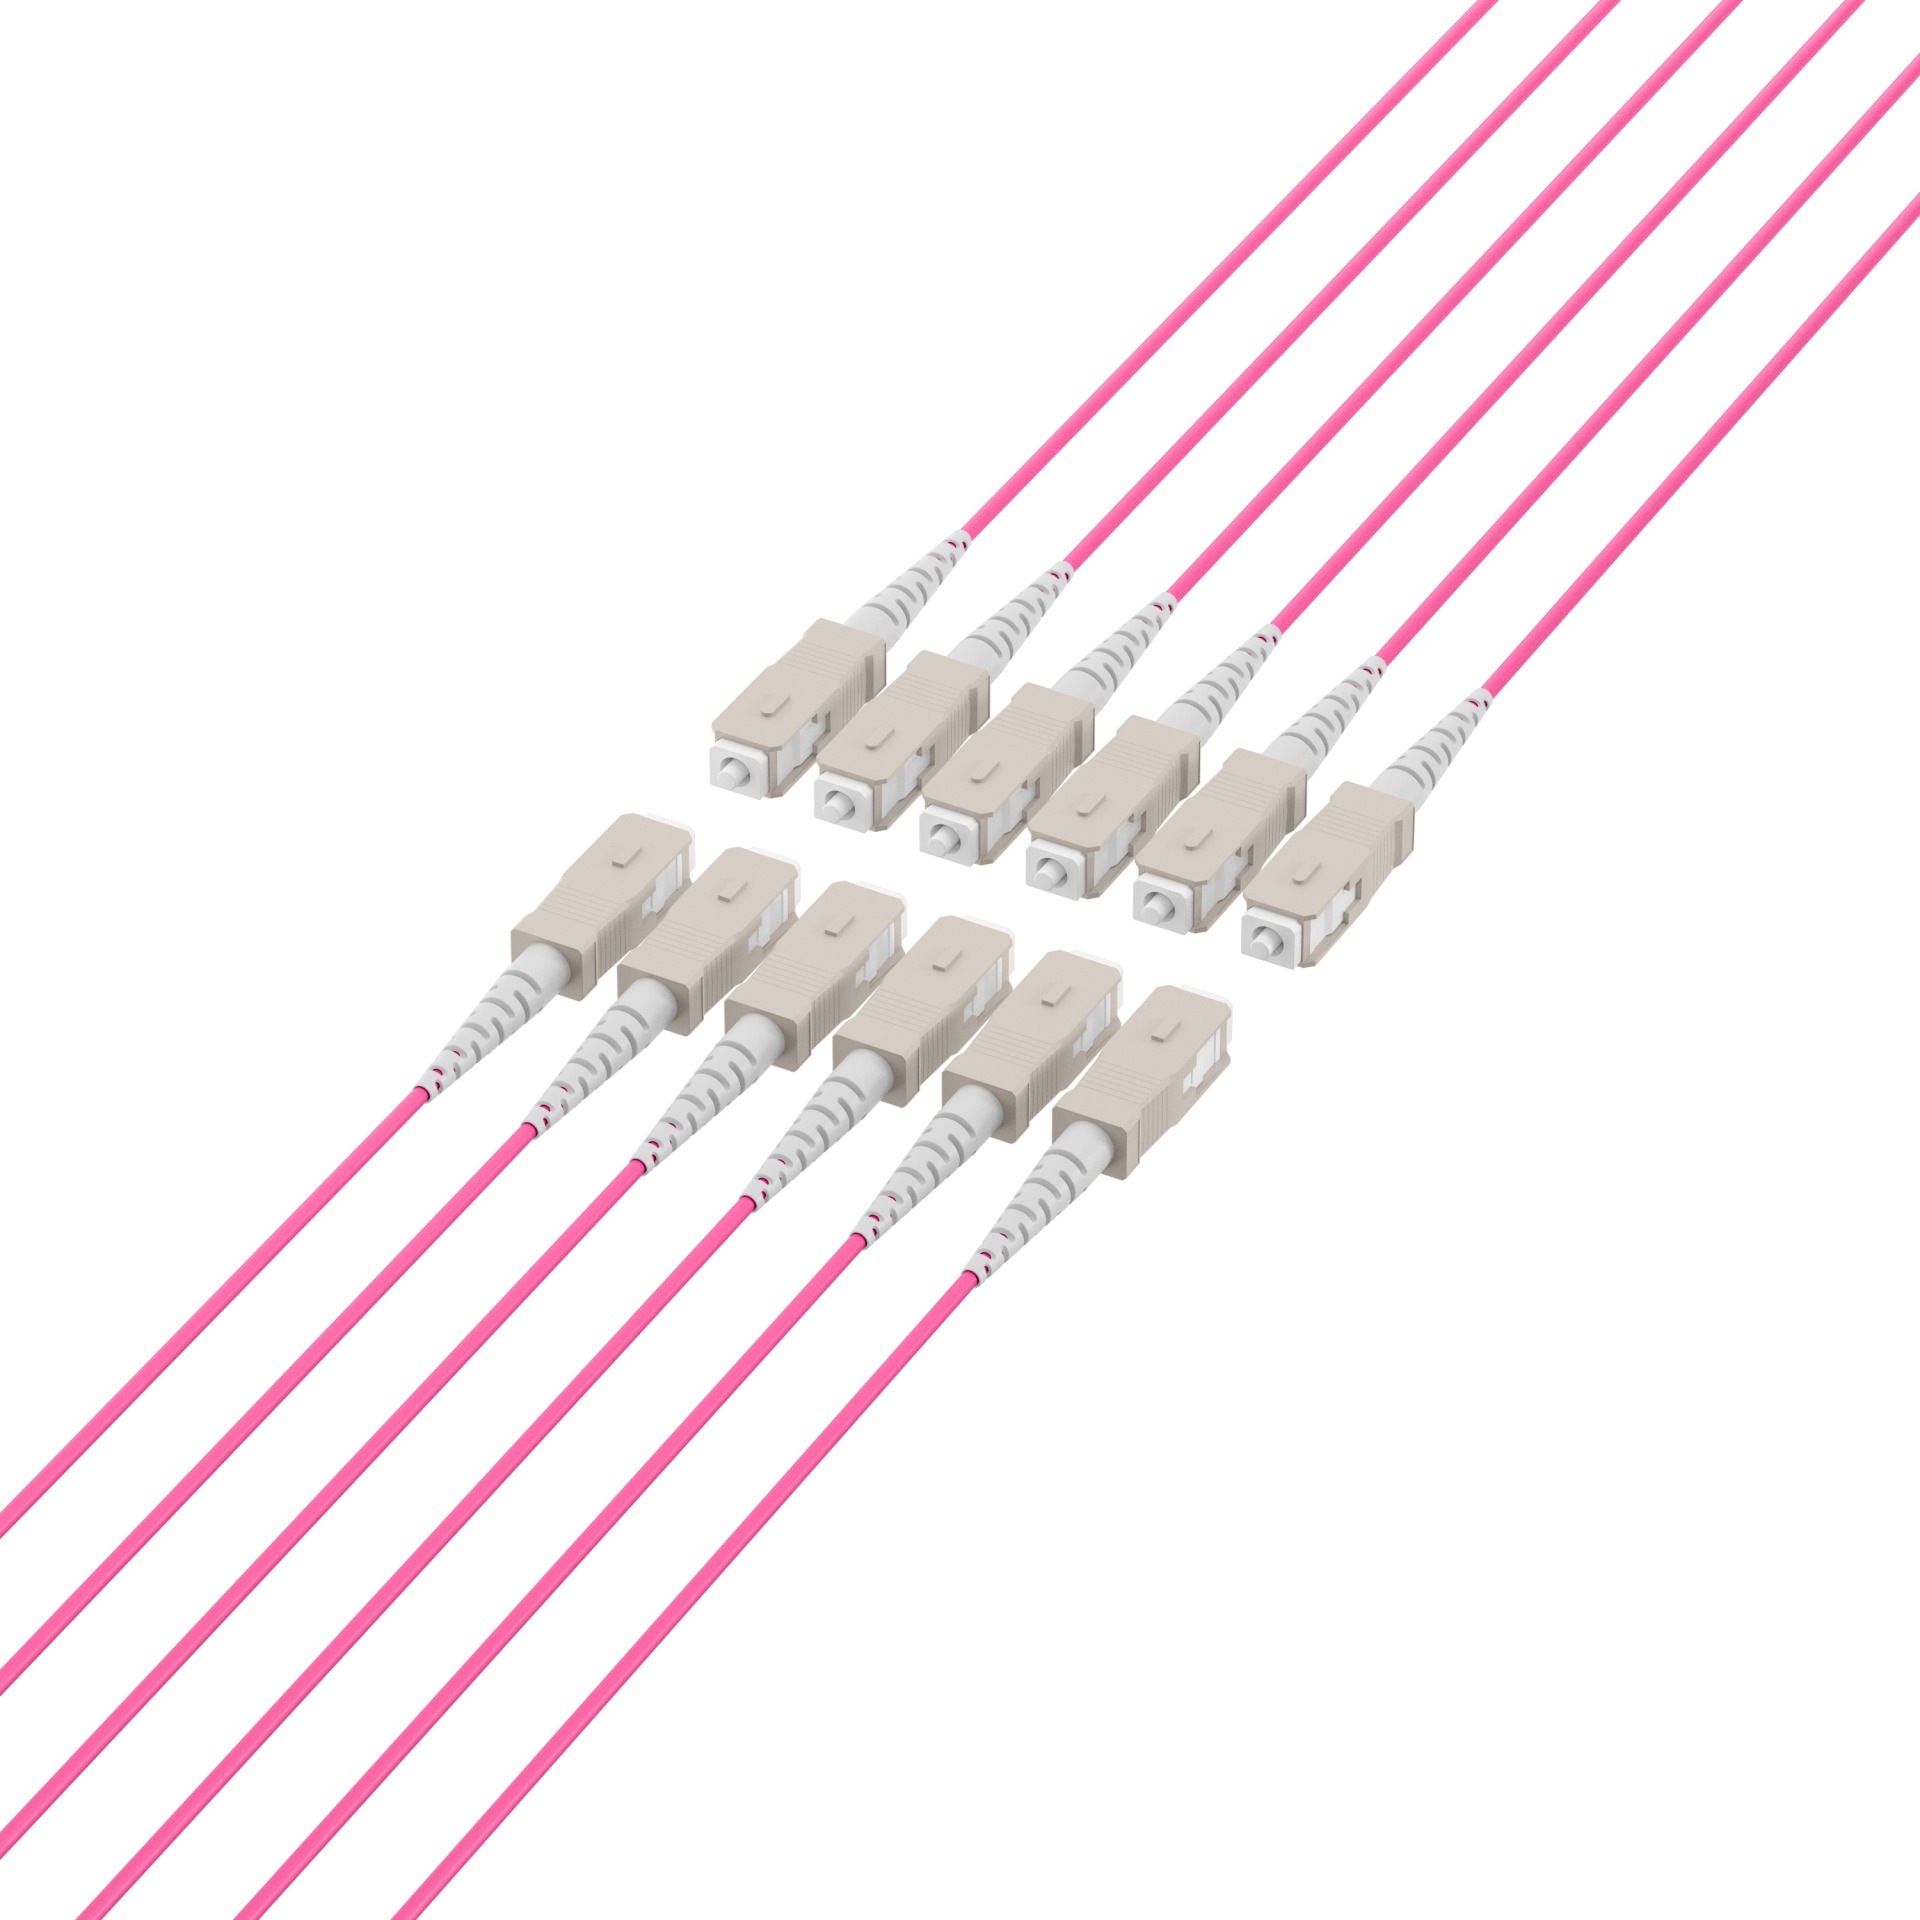 Trunk cable U-DQ(ZN)BH OM4 12G (1x12) SC-SC,40m Dca LSZH